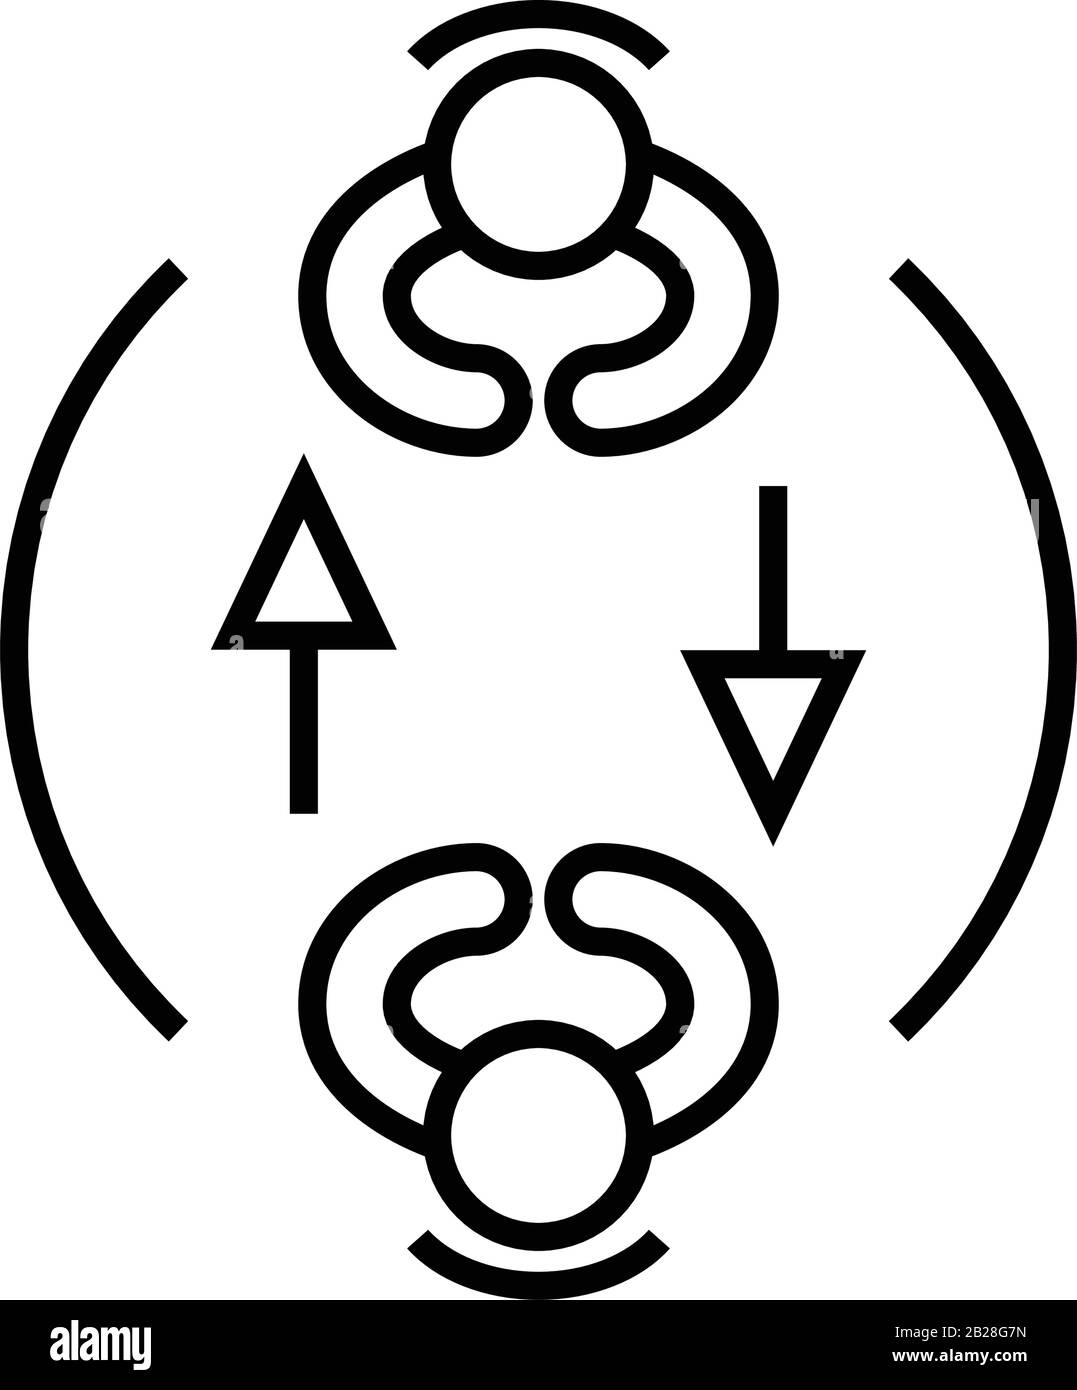 Condivisione dell'icona della linea di espiazione, del segno concettuale, dell'illustrazione del vettore di contorno, del simbolo lineare. Illustrazione Vettoriale